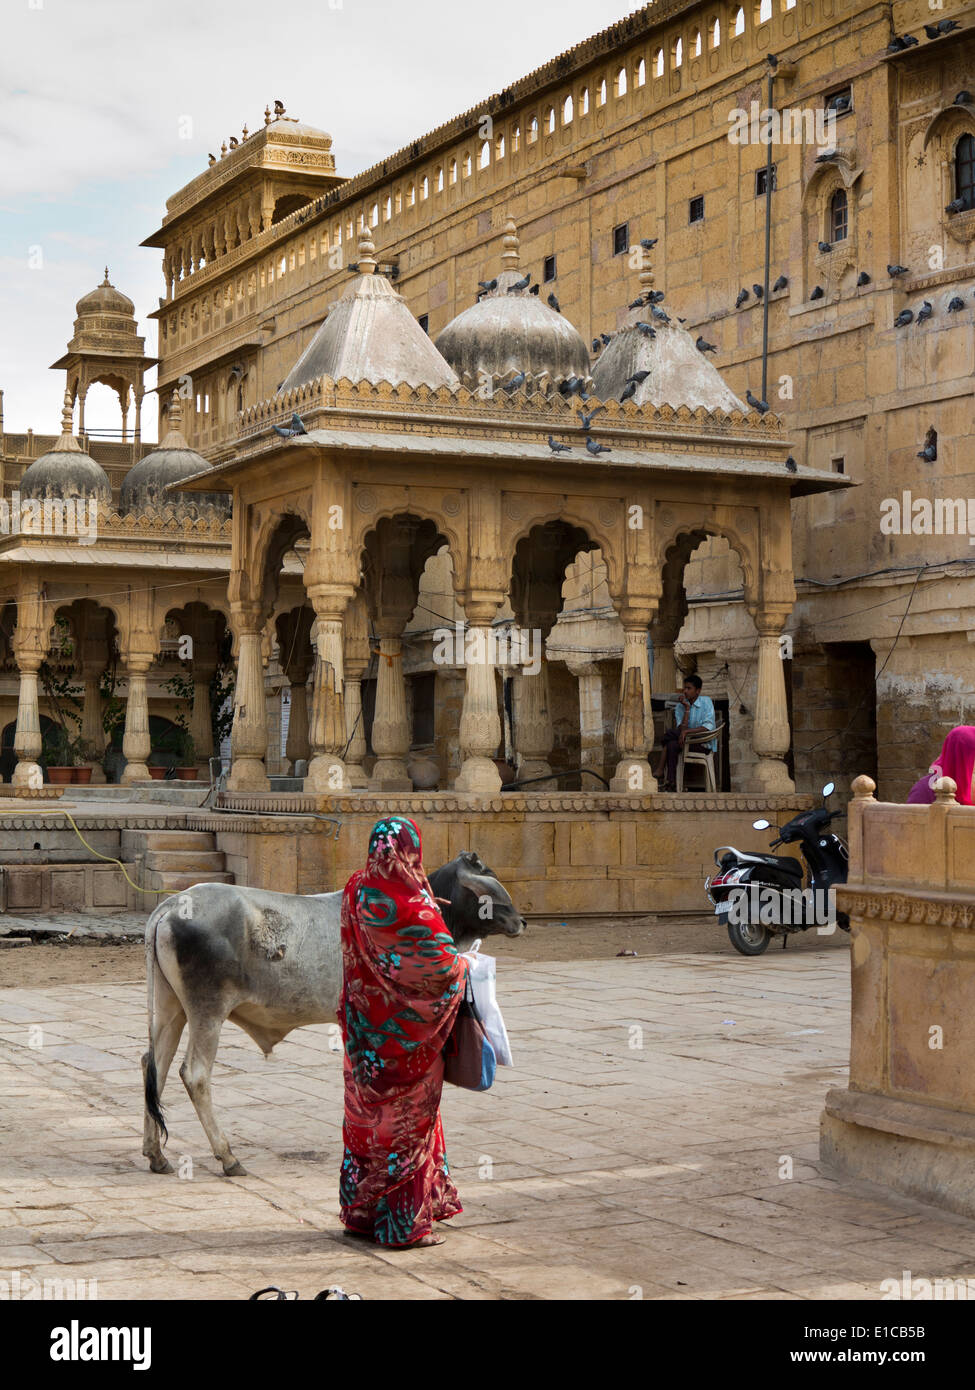 Indien, Rajasthan, Jaisalmer, Gandhi Chowk, Kühe im Mandir Palace Hotel Garten, Erbe zu Hause der ehemaligen Herrscher Stockfoto